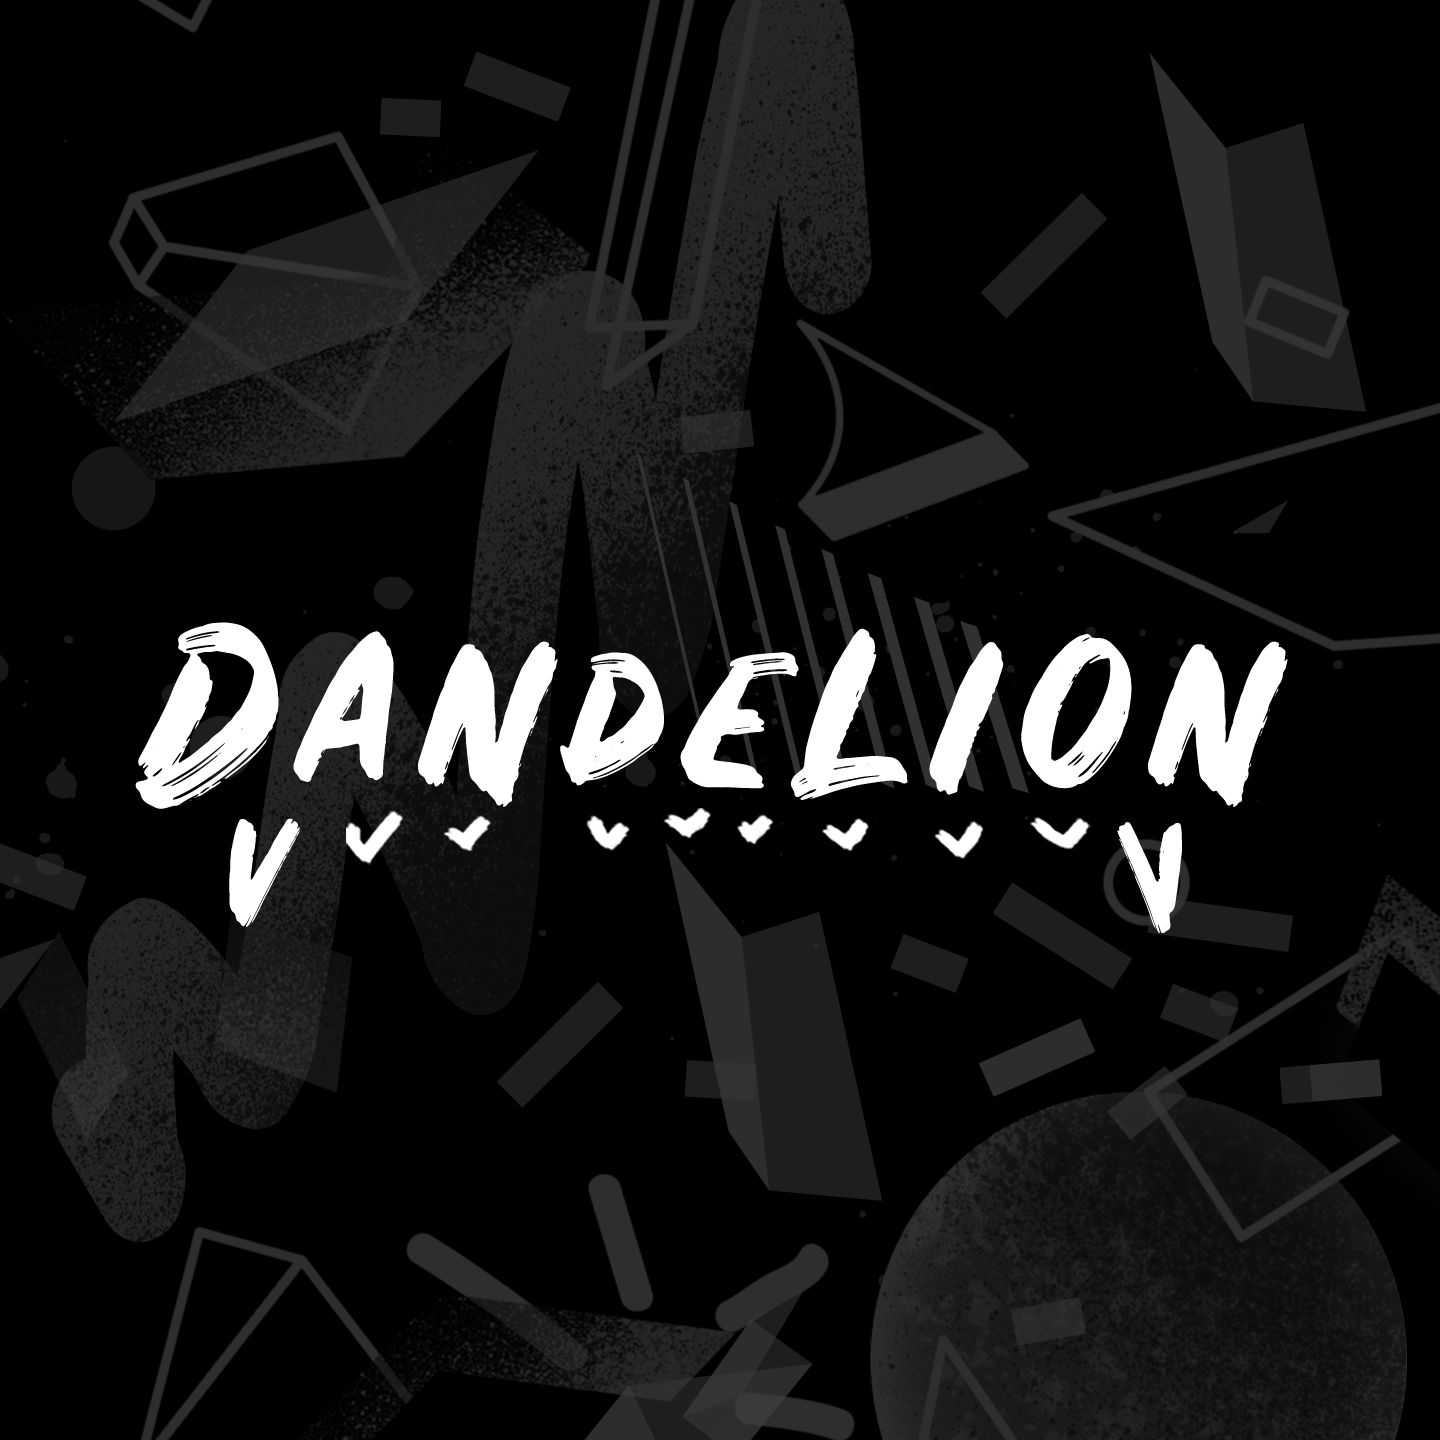 Xxx Shaneera - Spotify Playlists â€” Dandelion